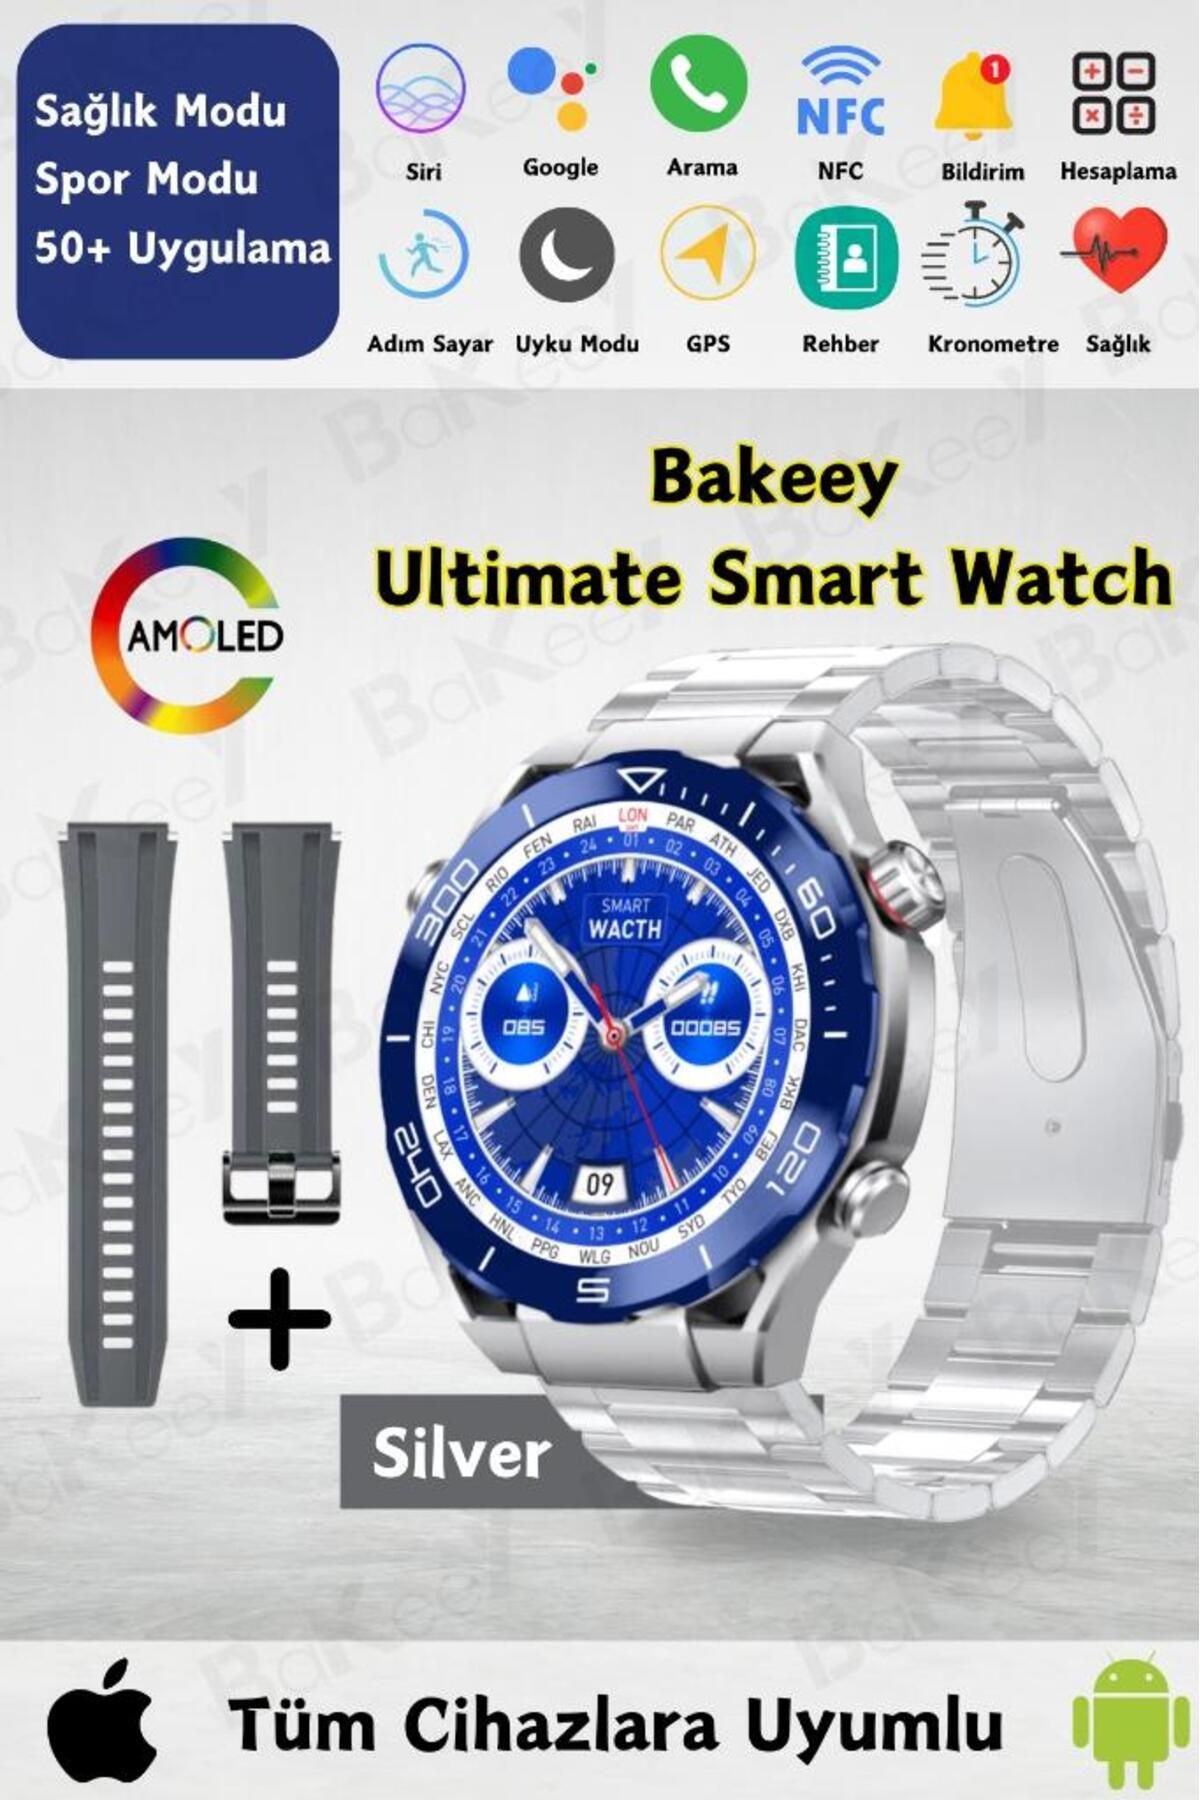 Bakeey Ultimate Smart Watch Akıllı Saat Amoled Ekran İki Kordon Android Iphone Uyumlu Akıllı Saat Watch 9 8